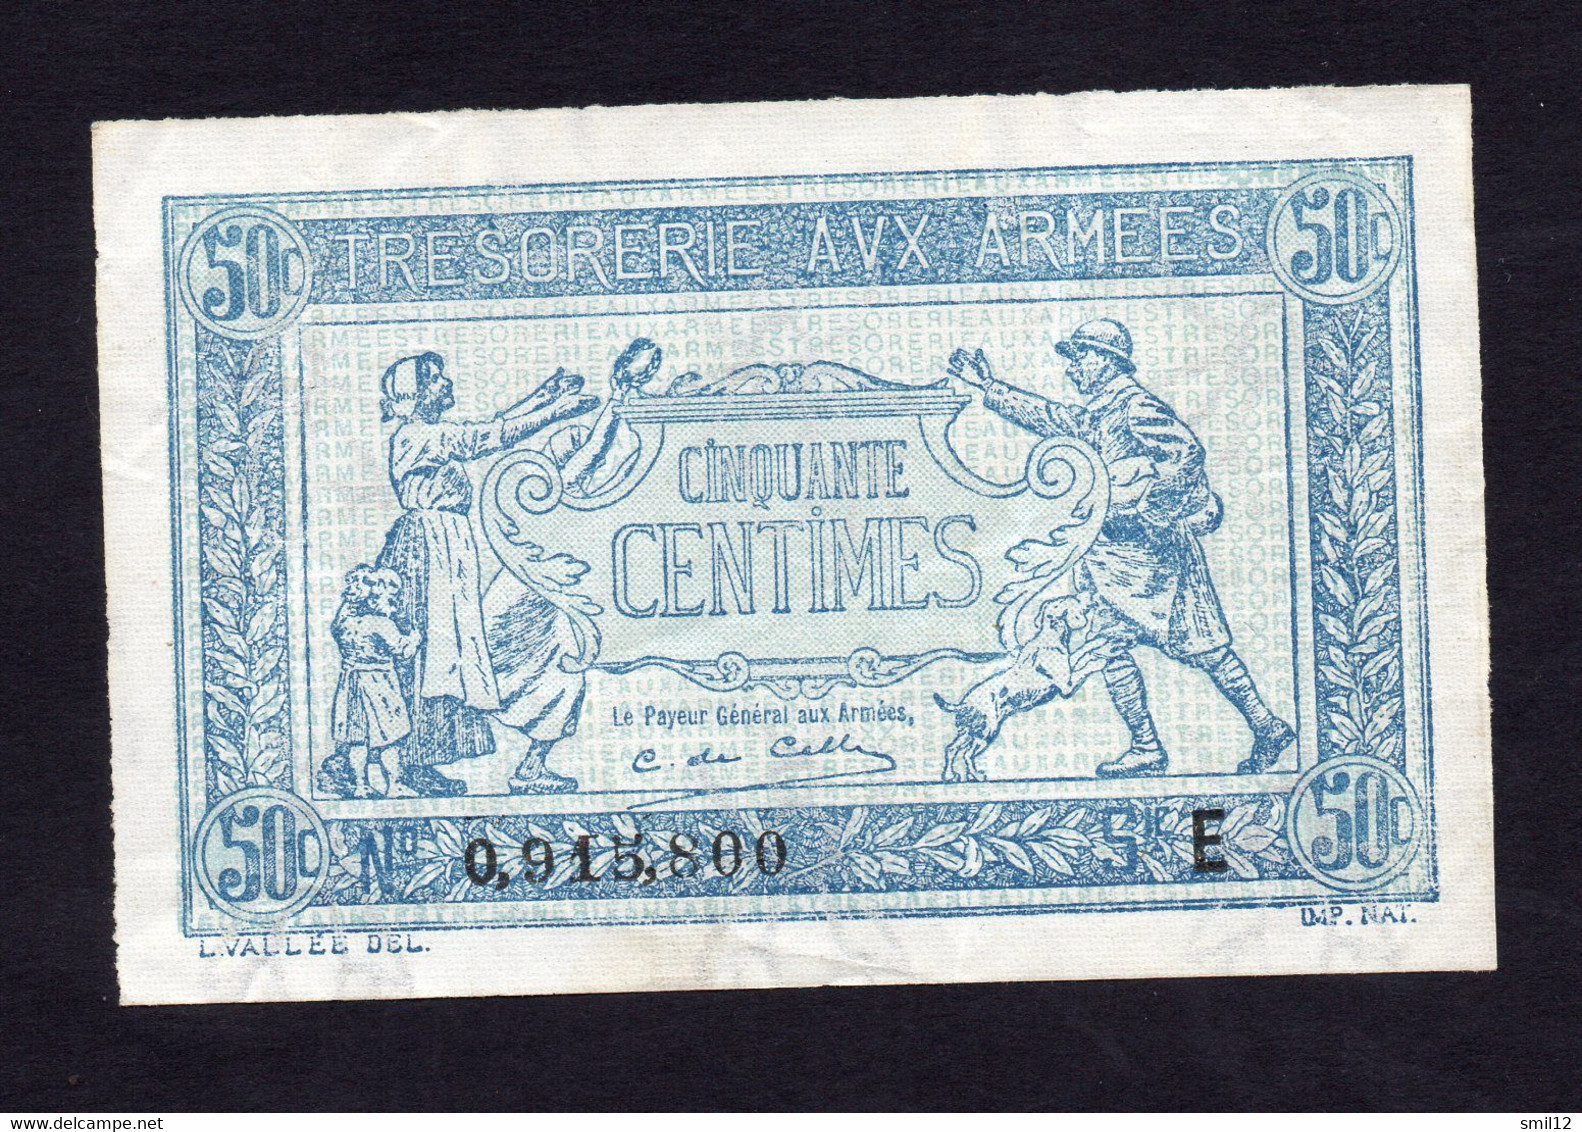 Trésorerie Aux Armées - 50 Centimes - Lettre E - Sup++ - 1917-1919 Army Treasury